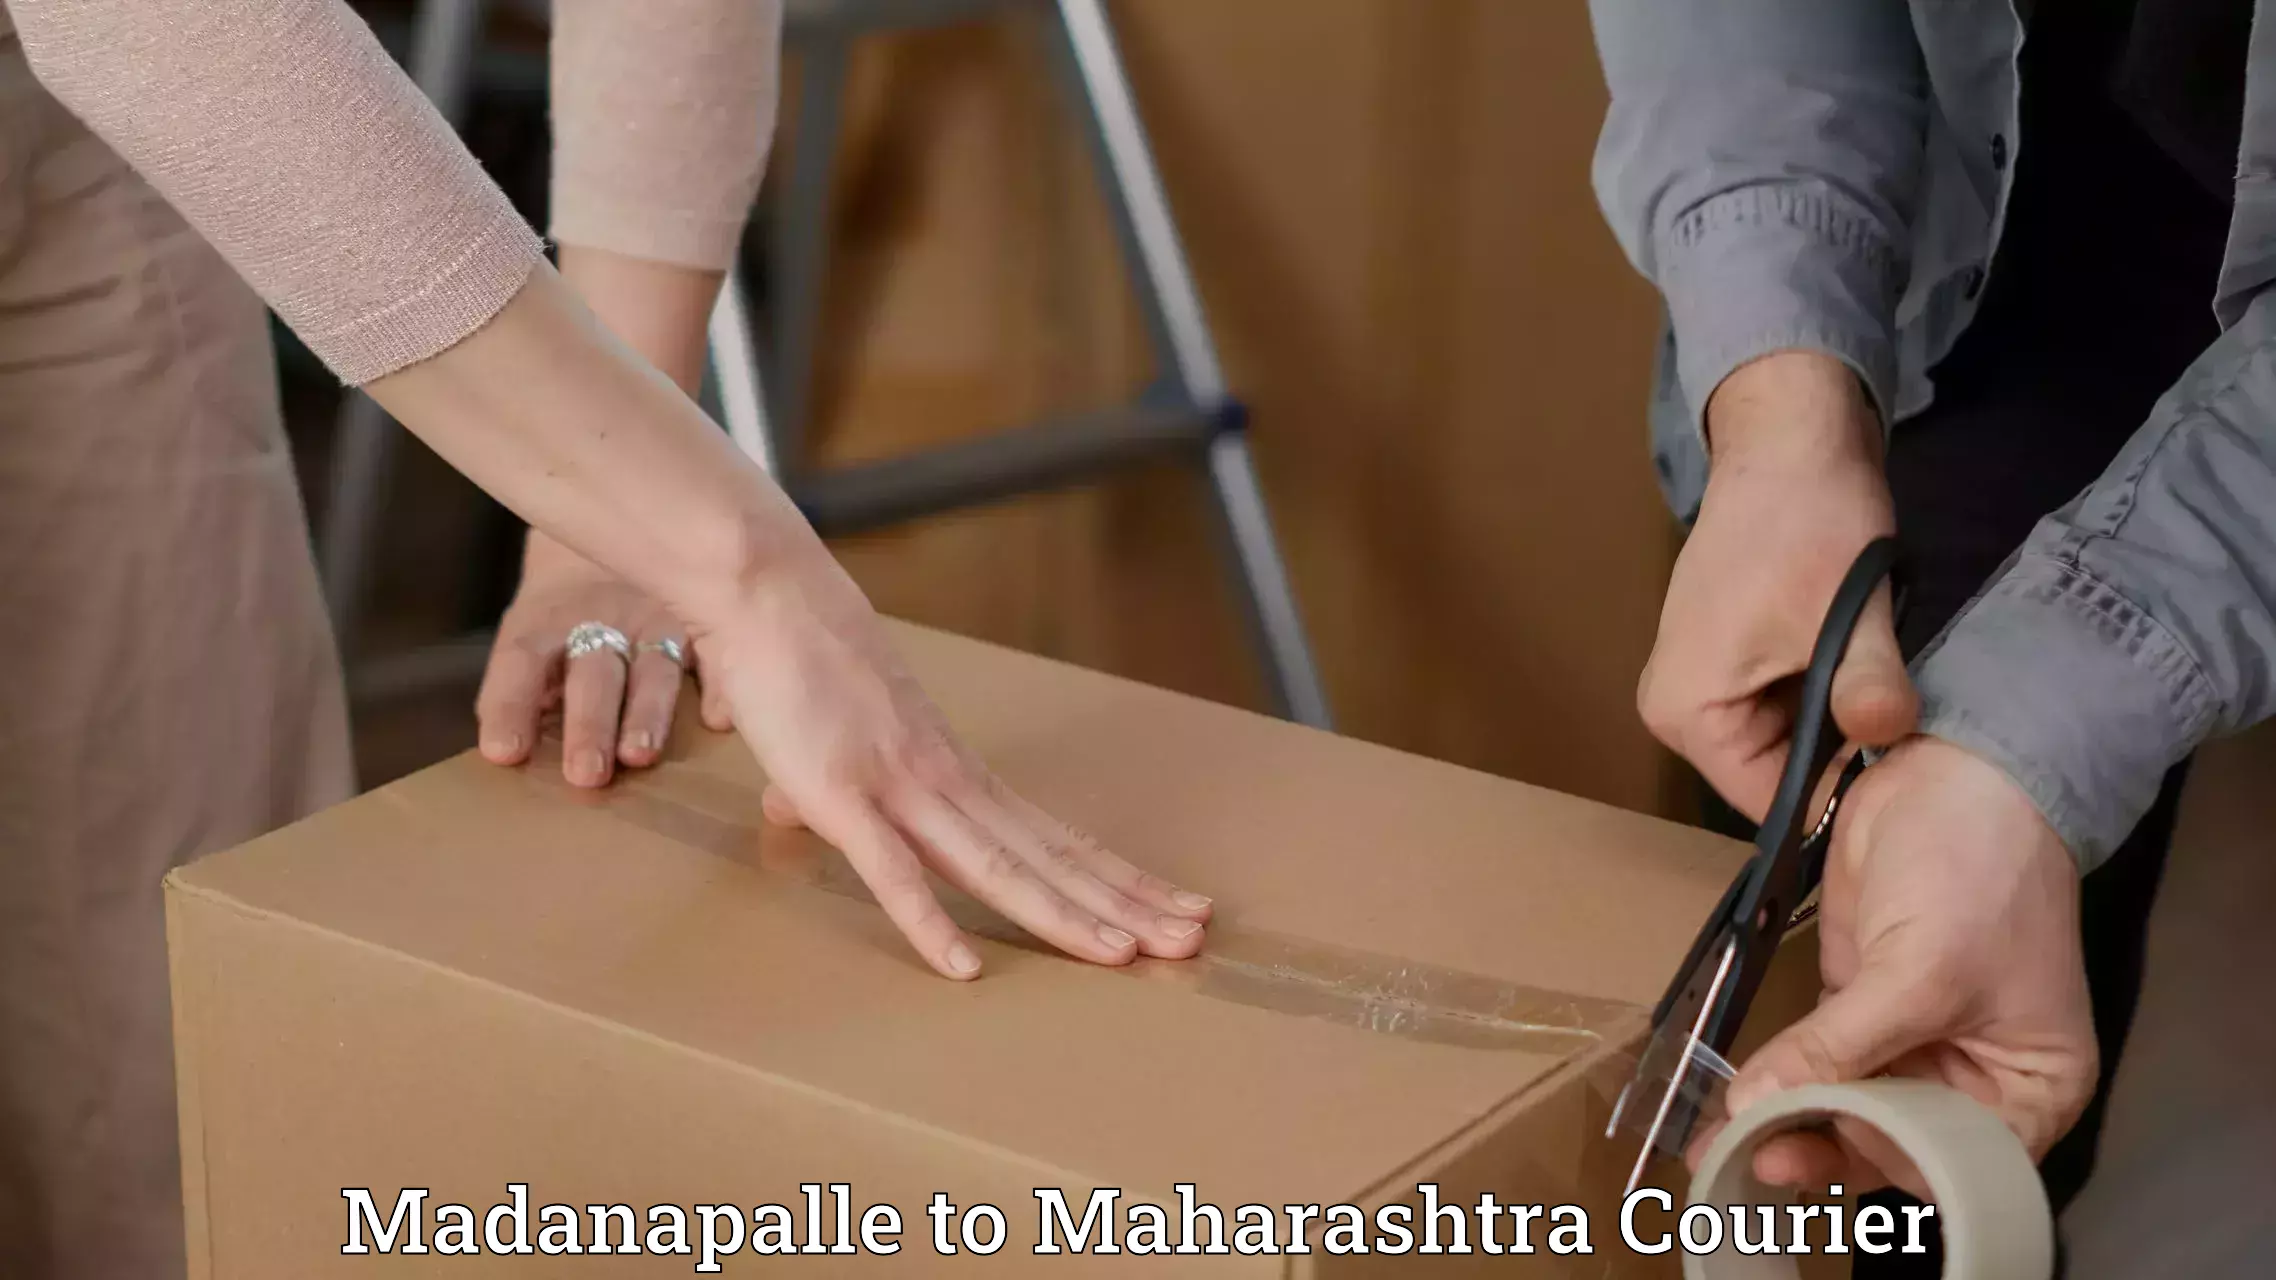 Courier app Madanapalle to Maharashtra